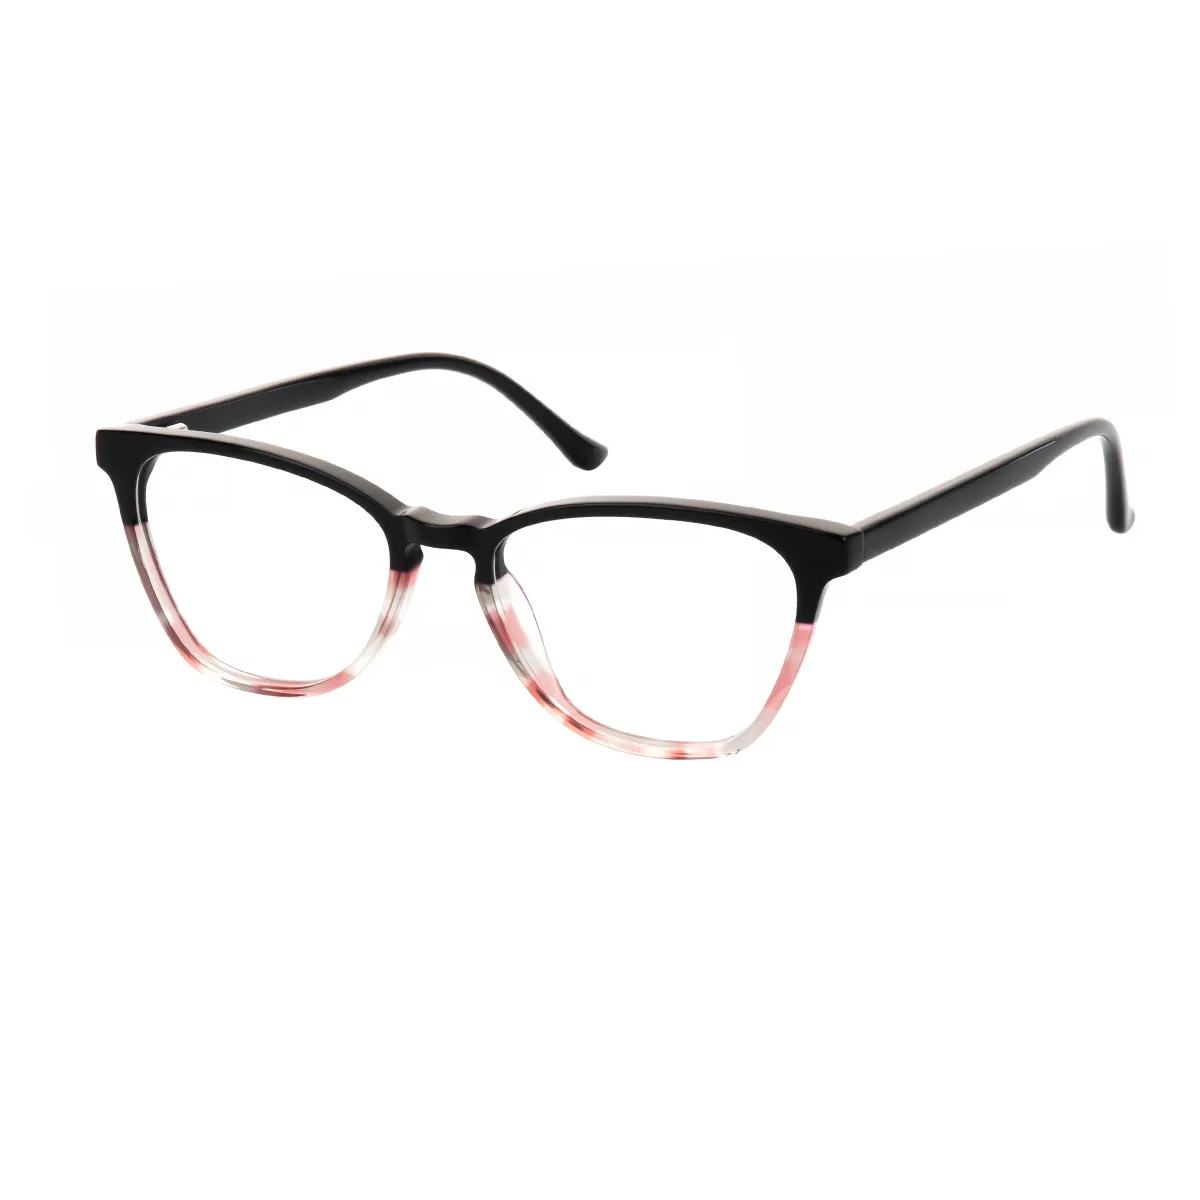 Fashion Cat-eye Black-Tortoiseshell Glasses for Women